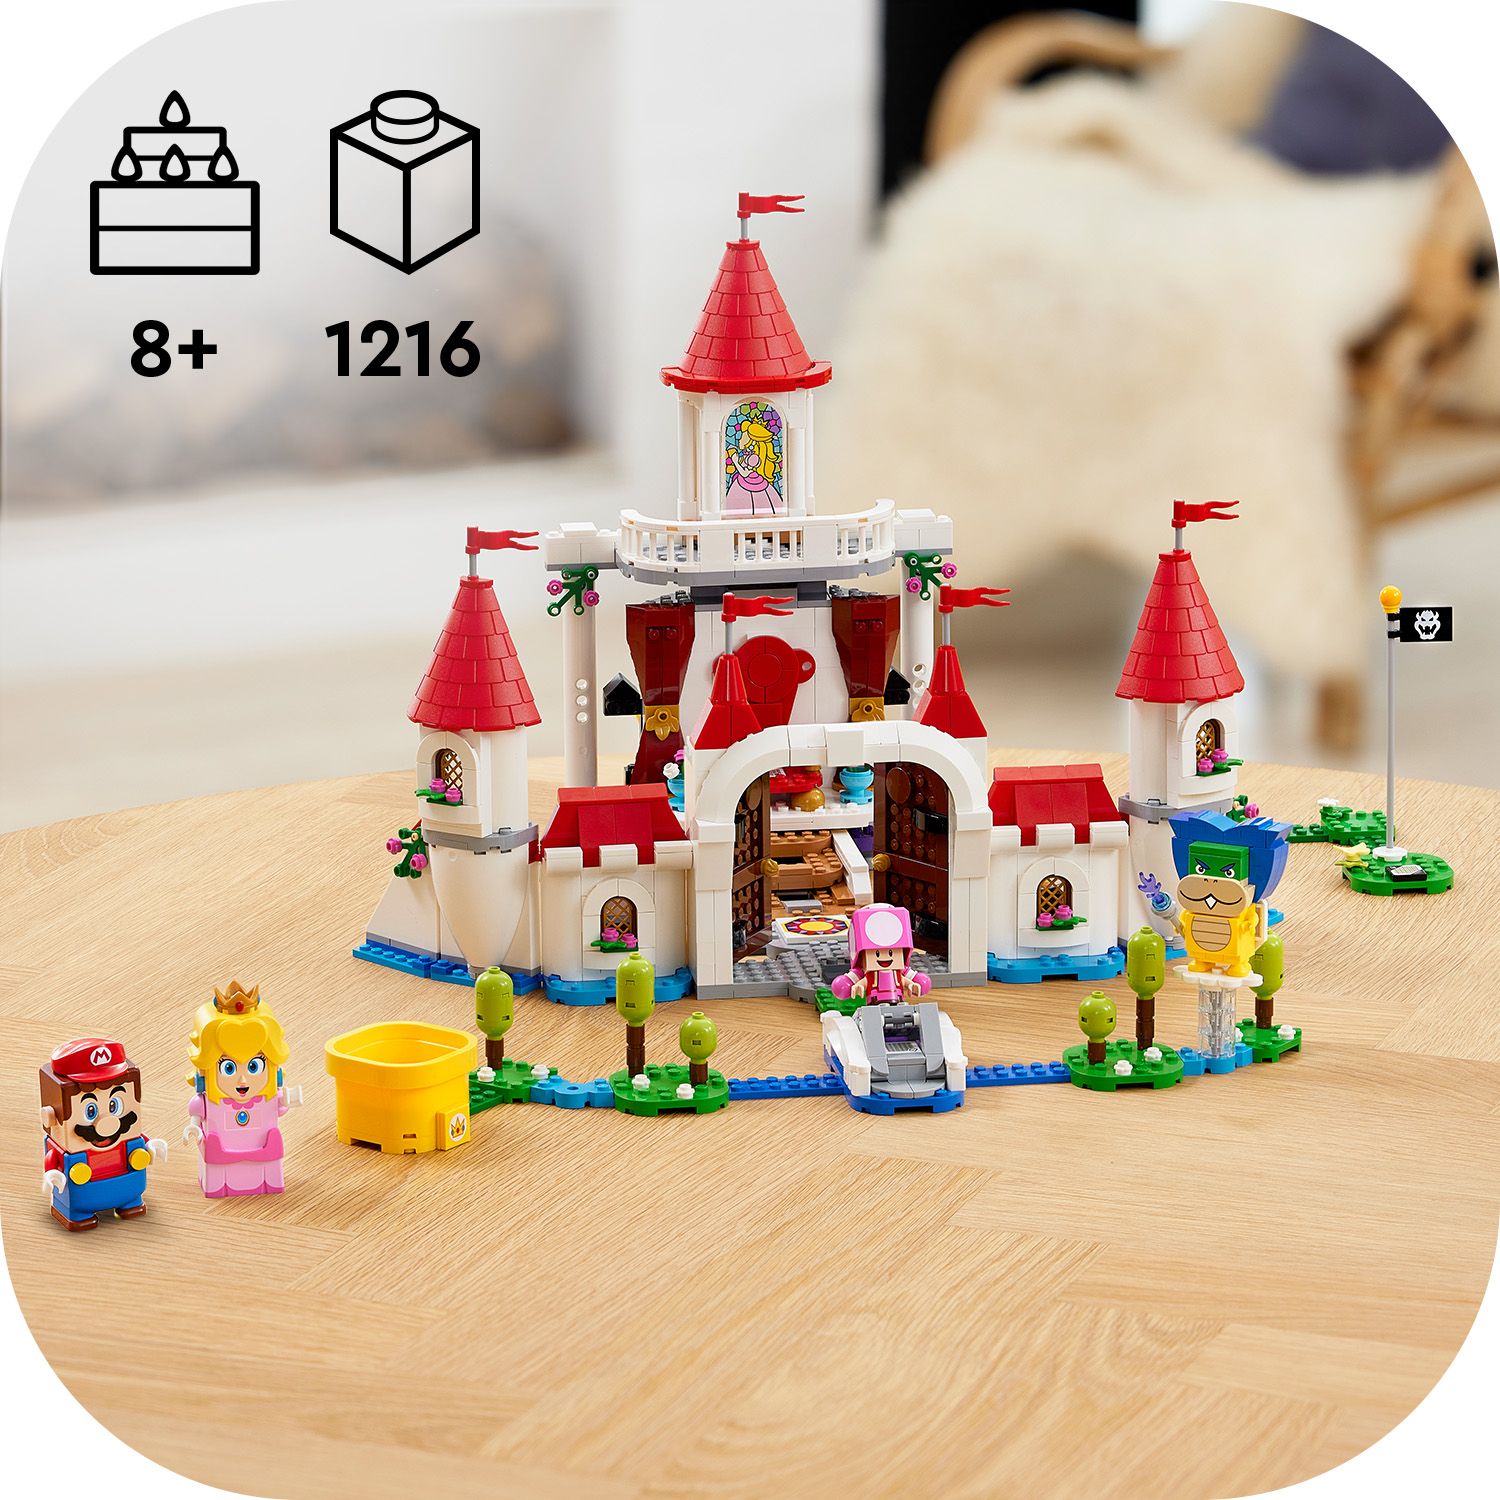 Peach's Castle Expansion Set 71408, LEGO® Super Mario™